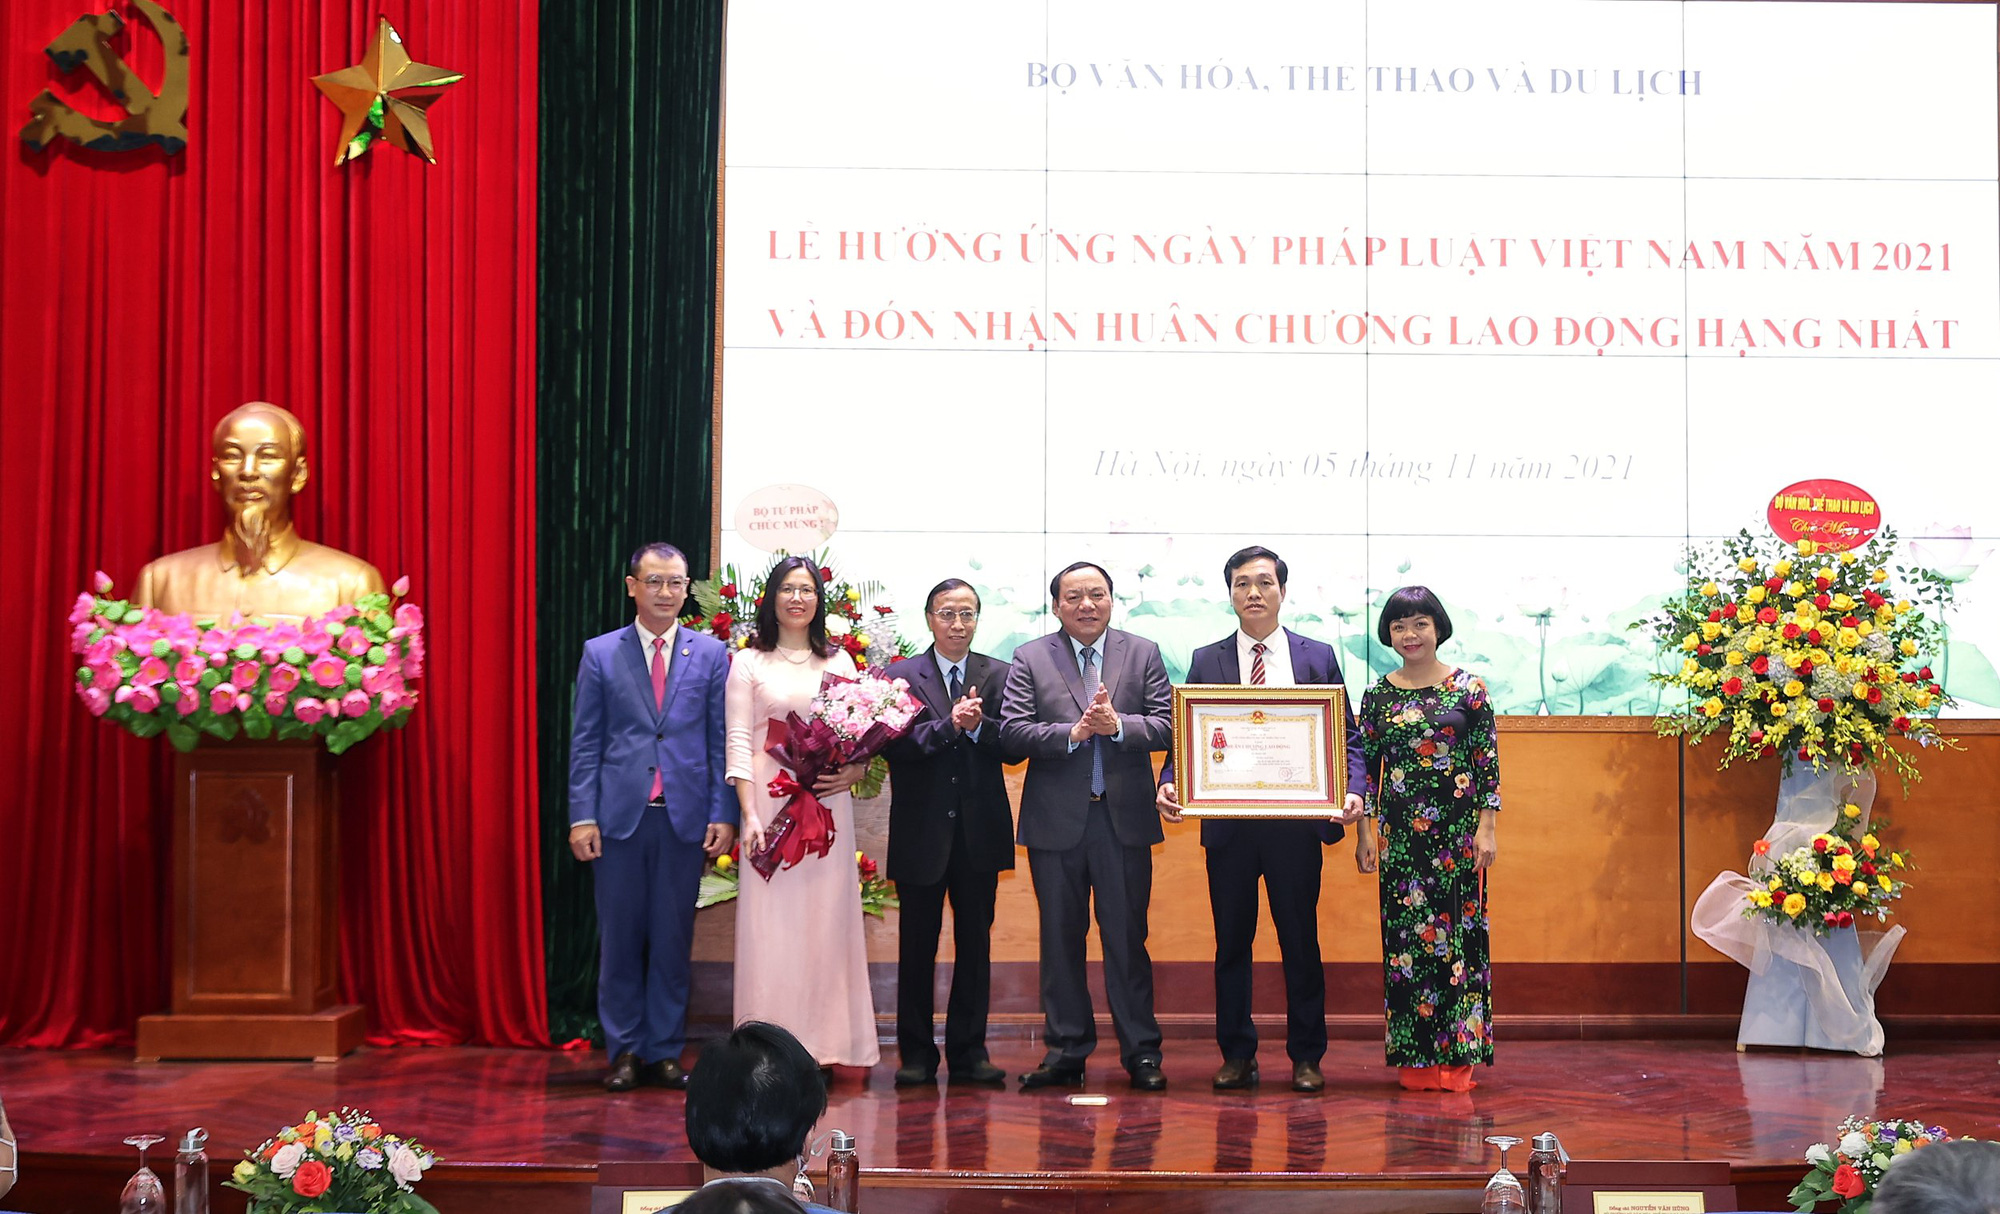 Bộ VHTTDL tổ chức Lễ hưởng ứng ngày Pháp luật Việt Nam năm 2021  - Ảnh 1.